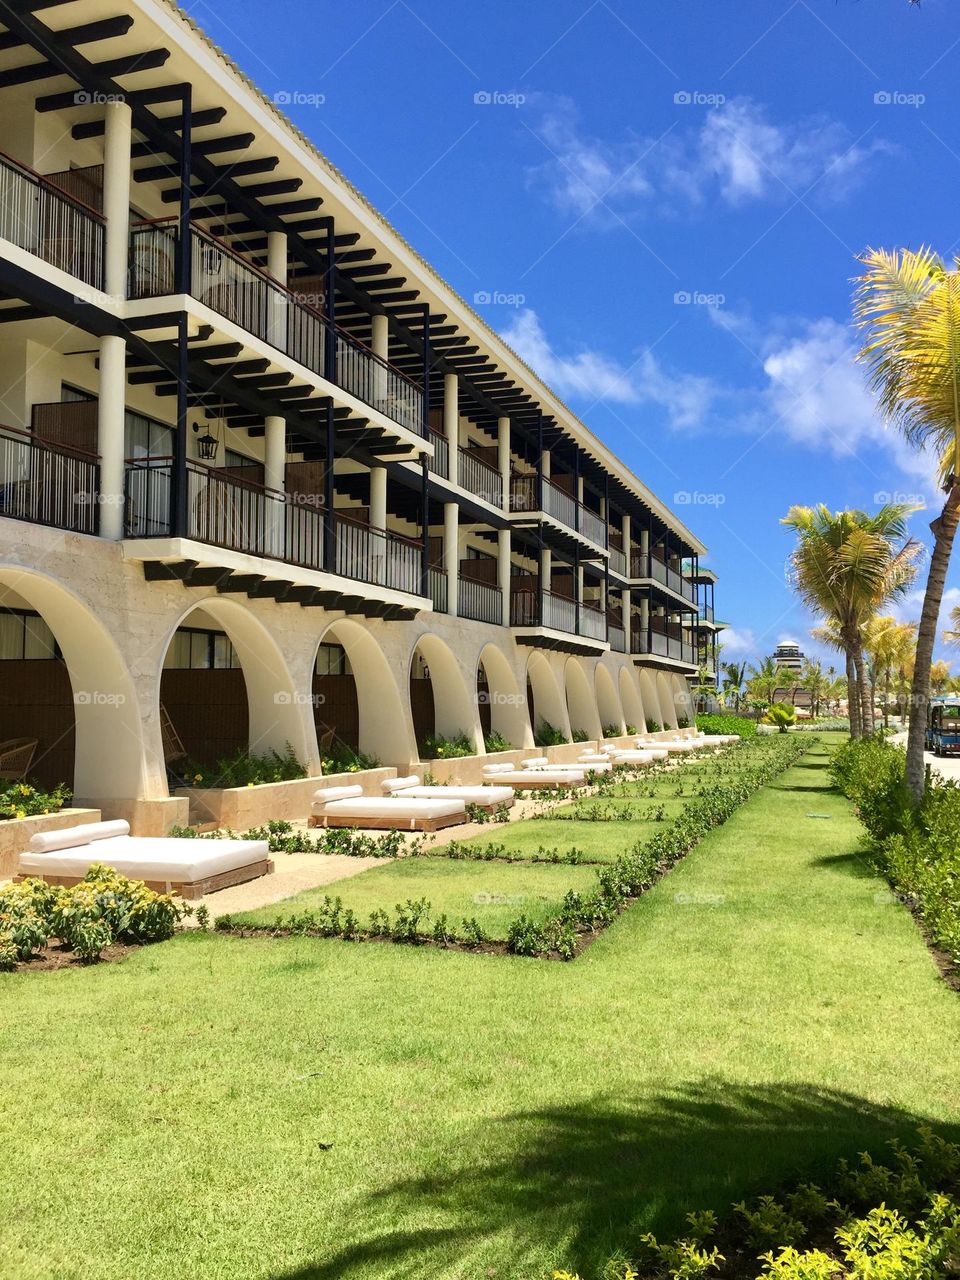 Faros Hotel in Punta Cana